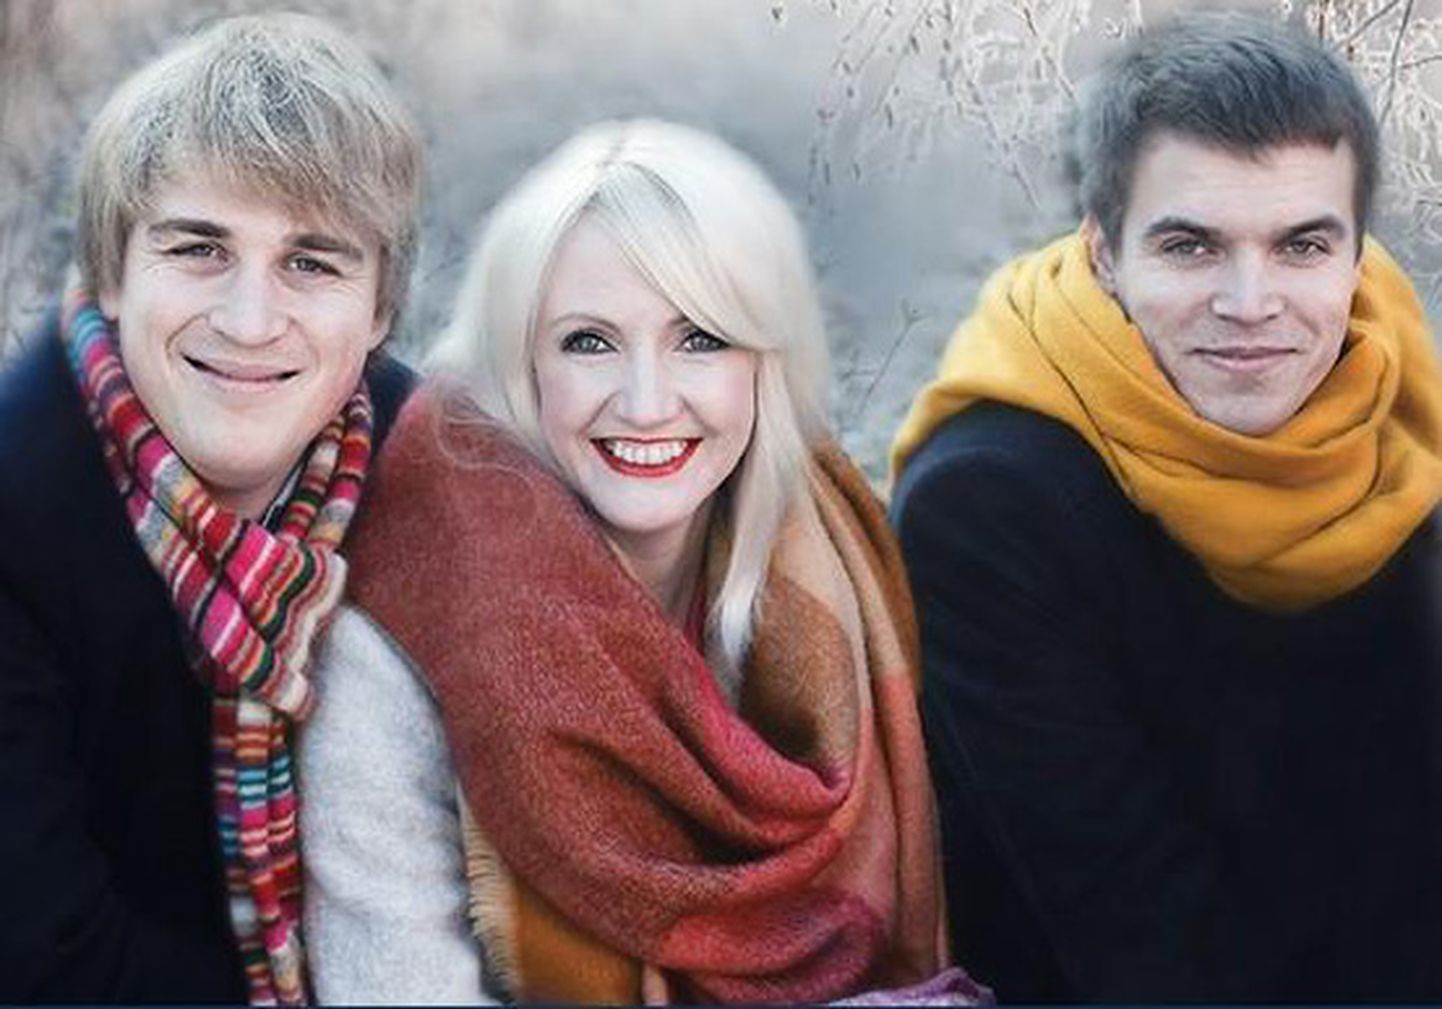 26 декабря в люганузеской церкви состоится концерт "Рождественский duur": Эвелин Самуэль-Рандвере, Йохан Рандвере (рояль) и Мартен Альтров (кларнет).